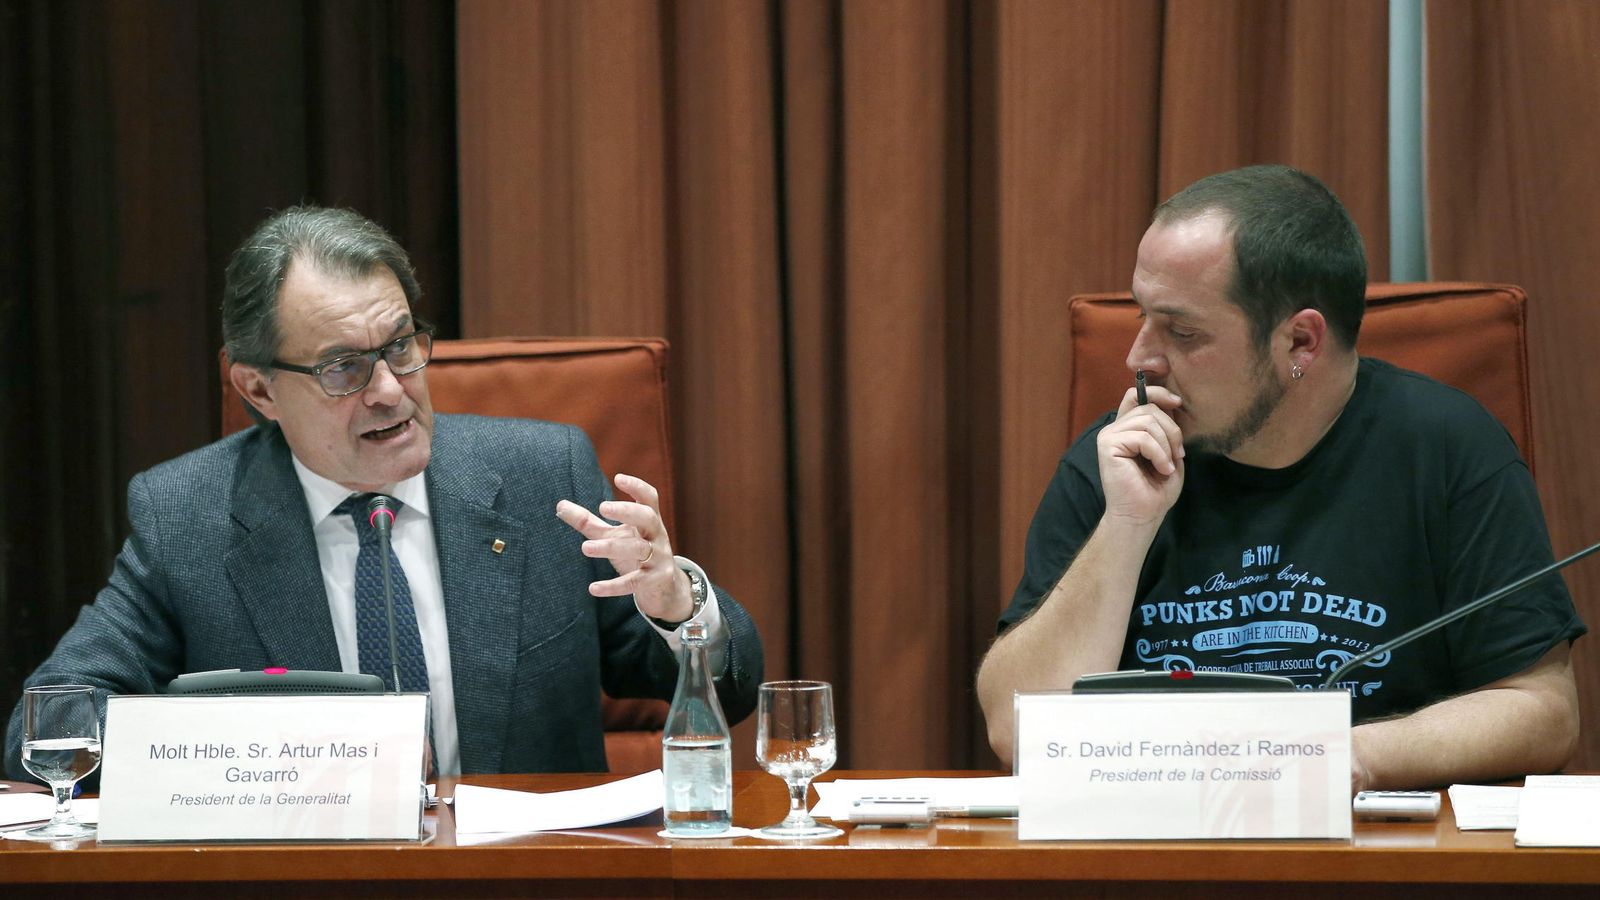 Foto:  El presidente de la Generalitat, Artur Mas (i), acompañado del presidente de la CUP David Fernández (Efe)